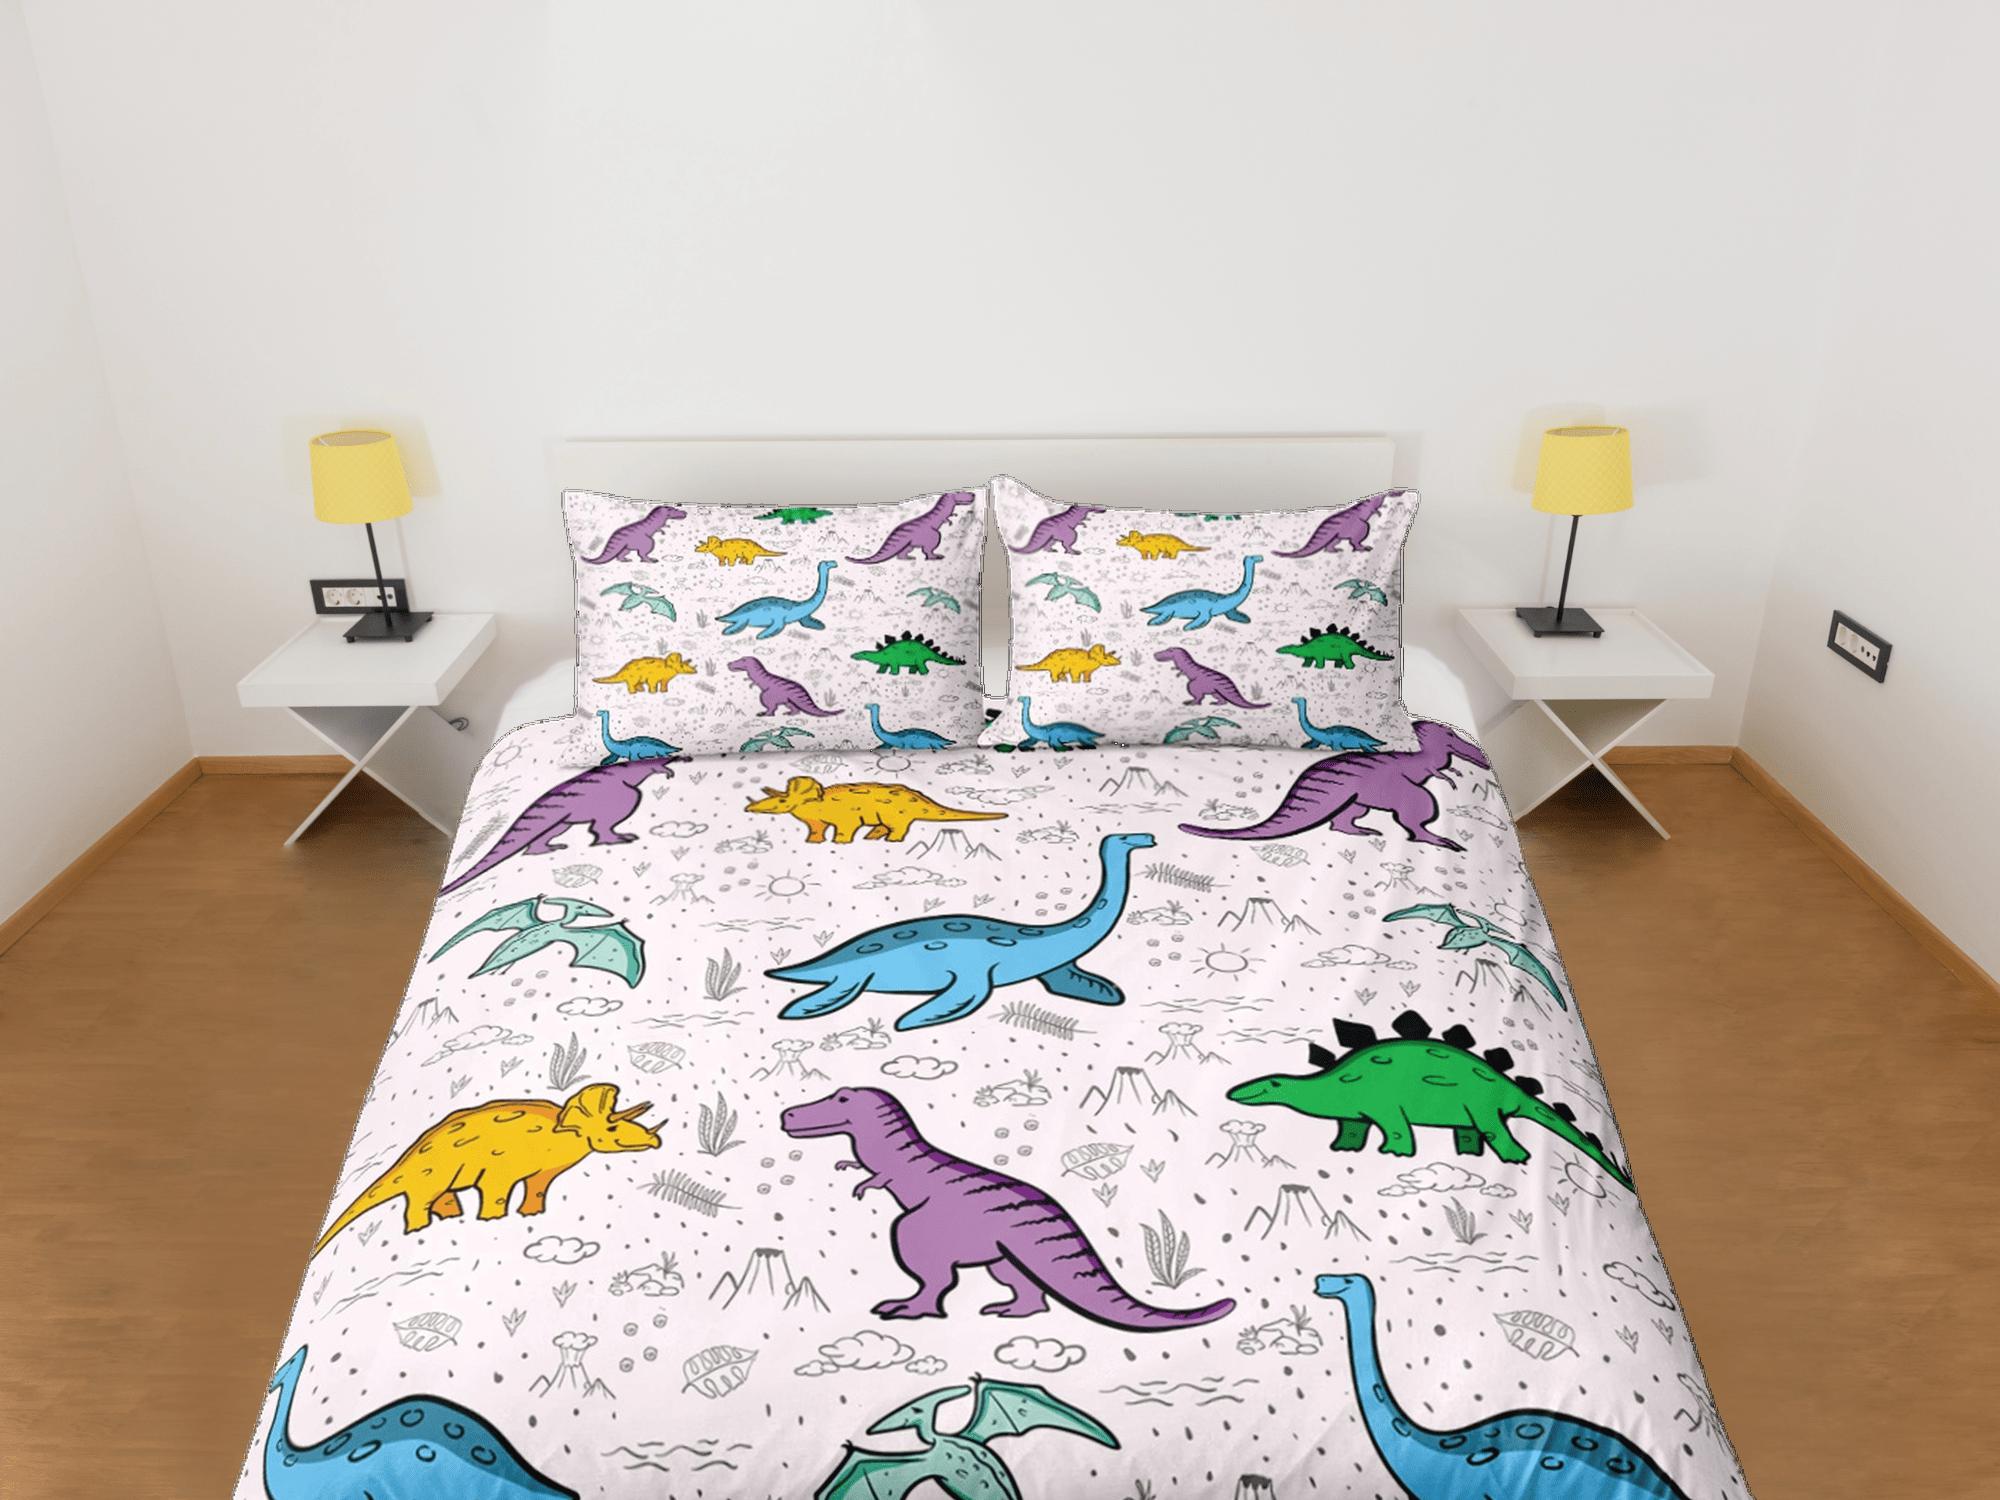 daintyduvet Lavender purple dinosaur bedding, kids bedding full, cute duvet cover set, nursery bed decor, colorful bedding, baby dinosaur, toddler